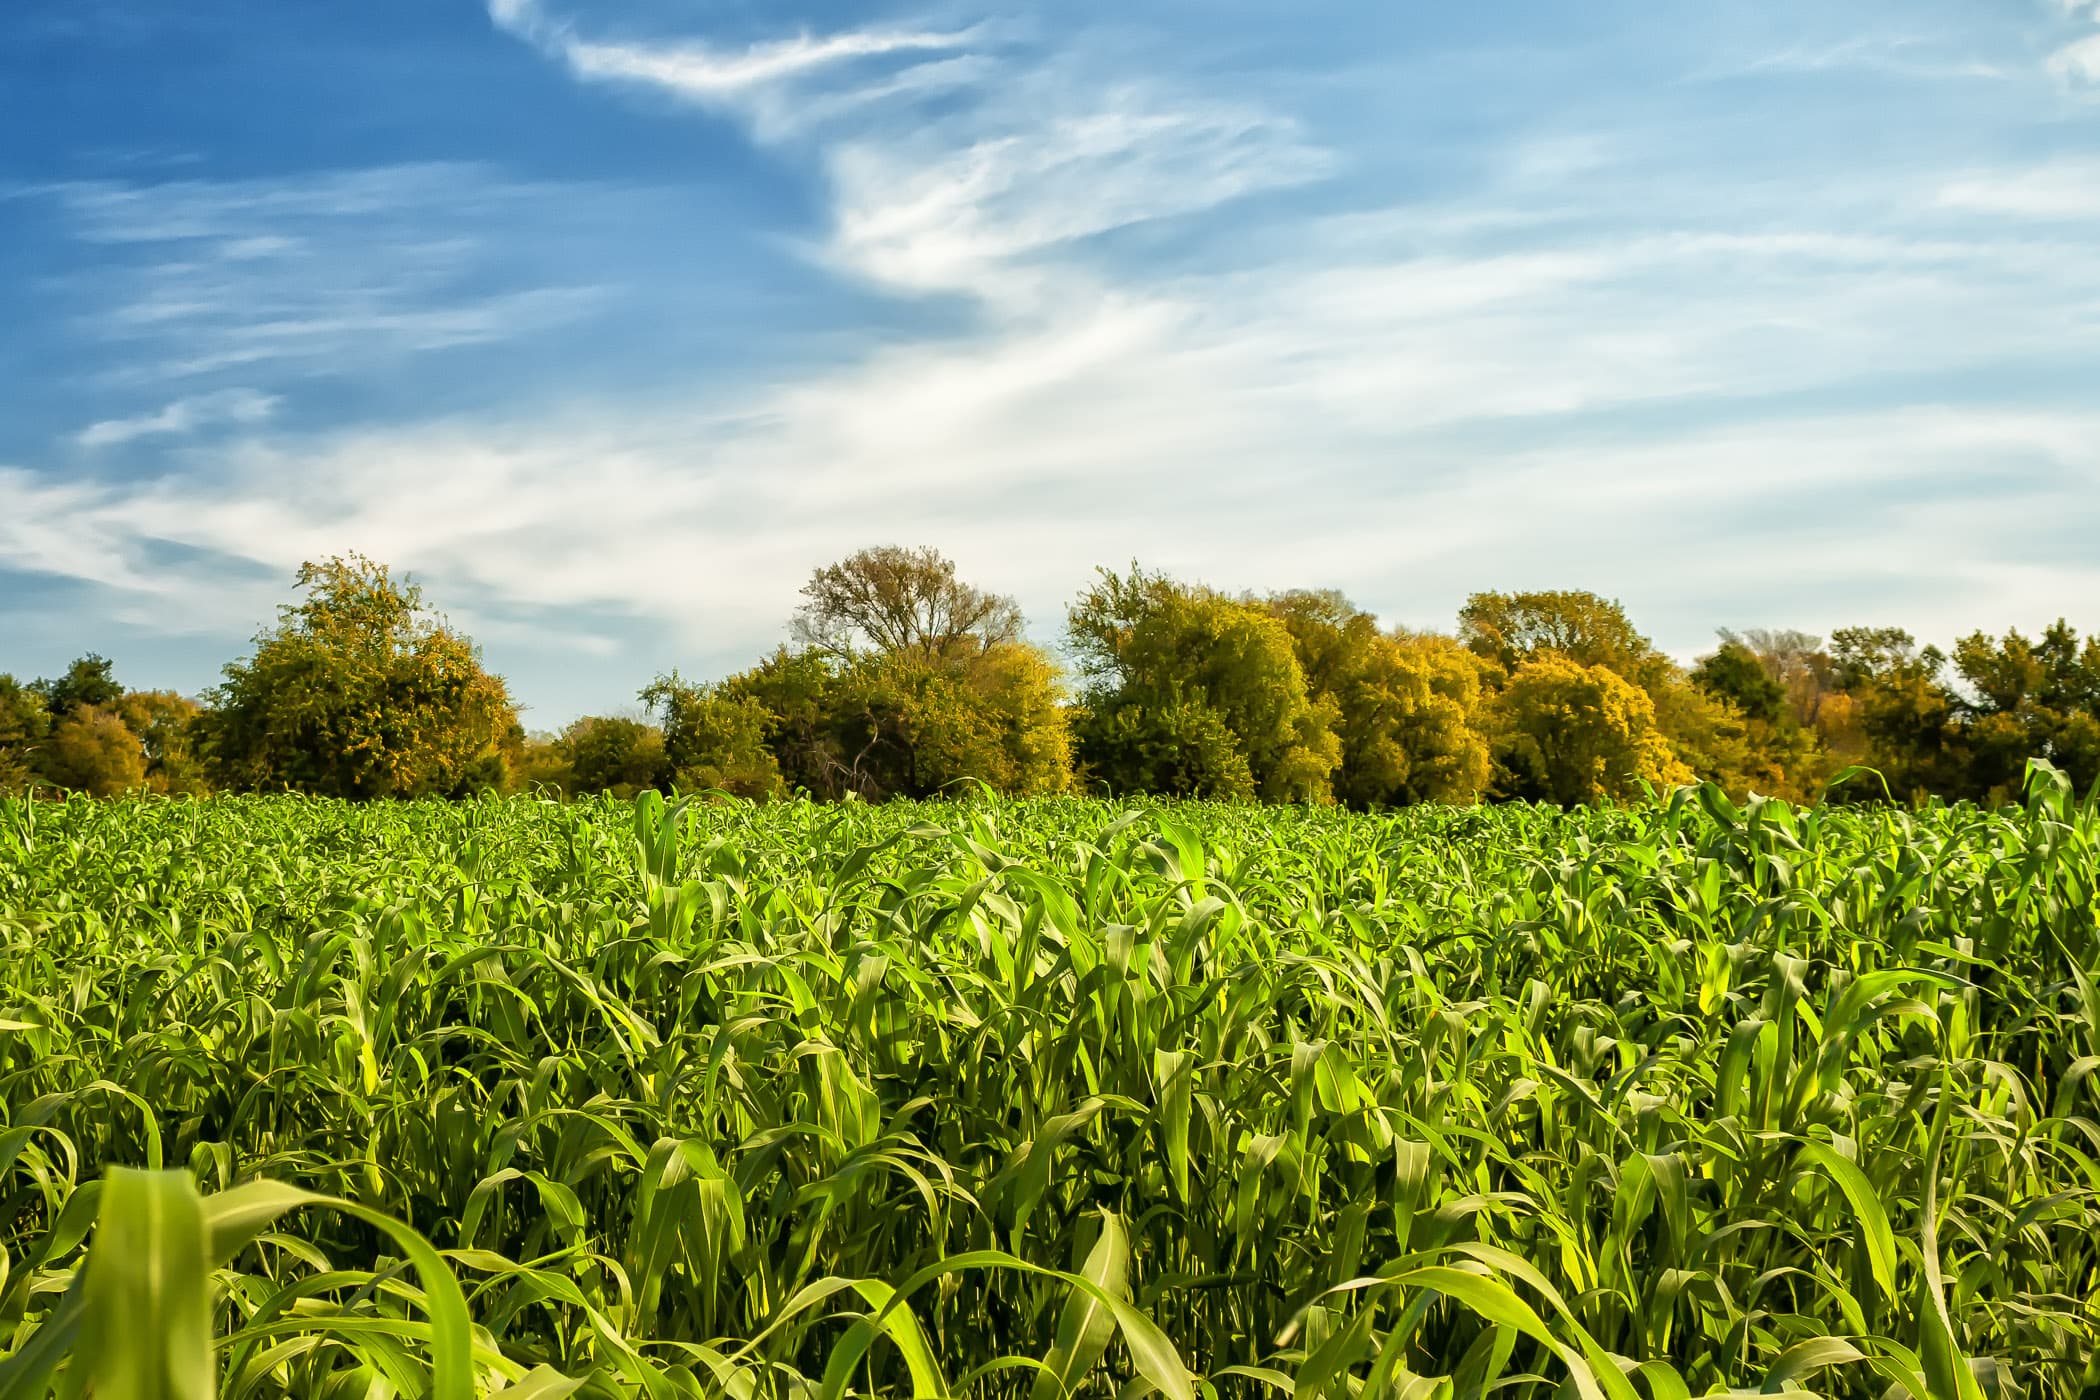 A cornfield at Moore Farms, Bullard, Texas.